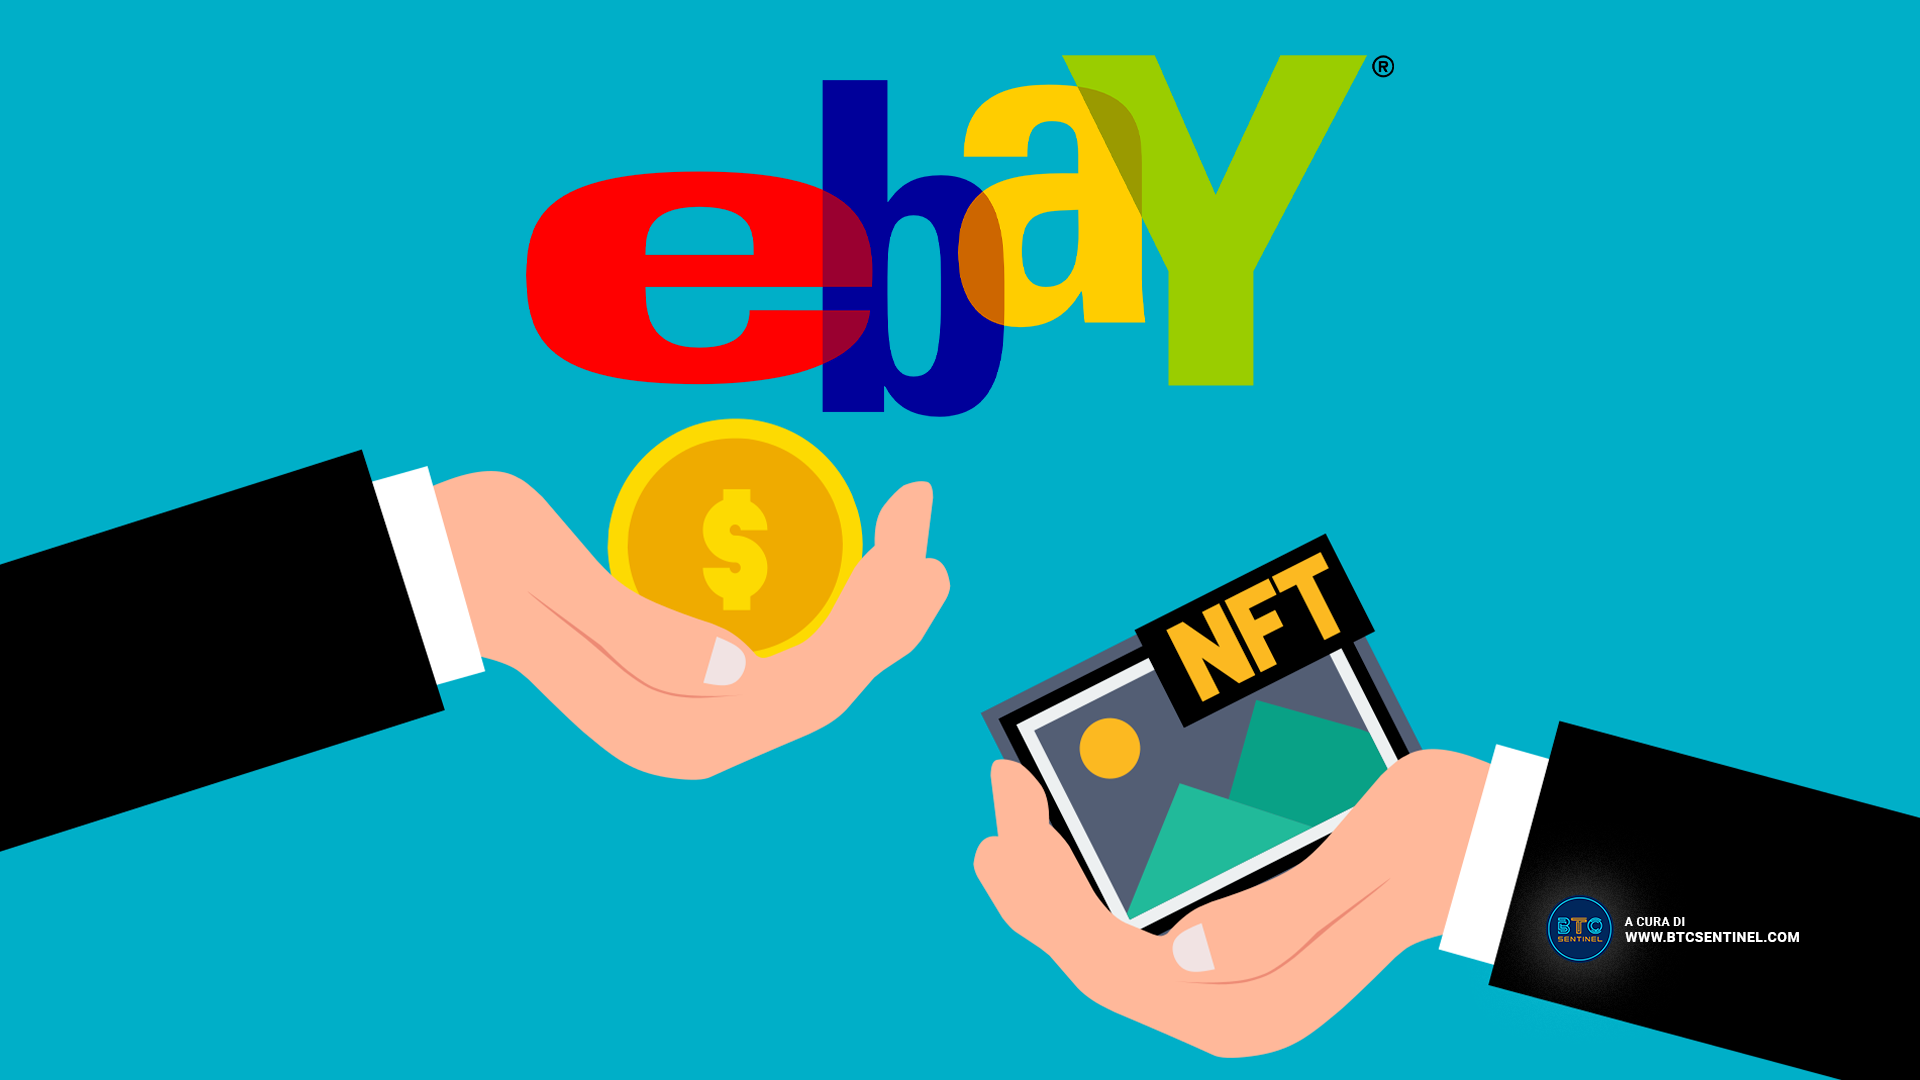 eBay acquisisce il Marketplace NFT KnownOrigin per un importo top secret